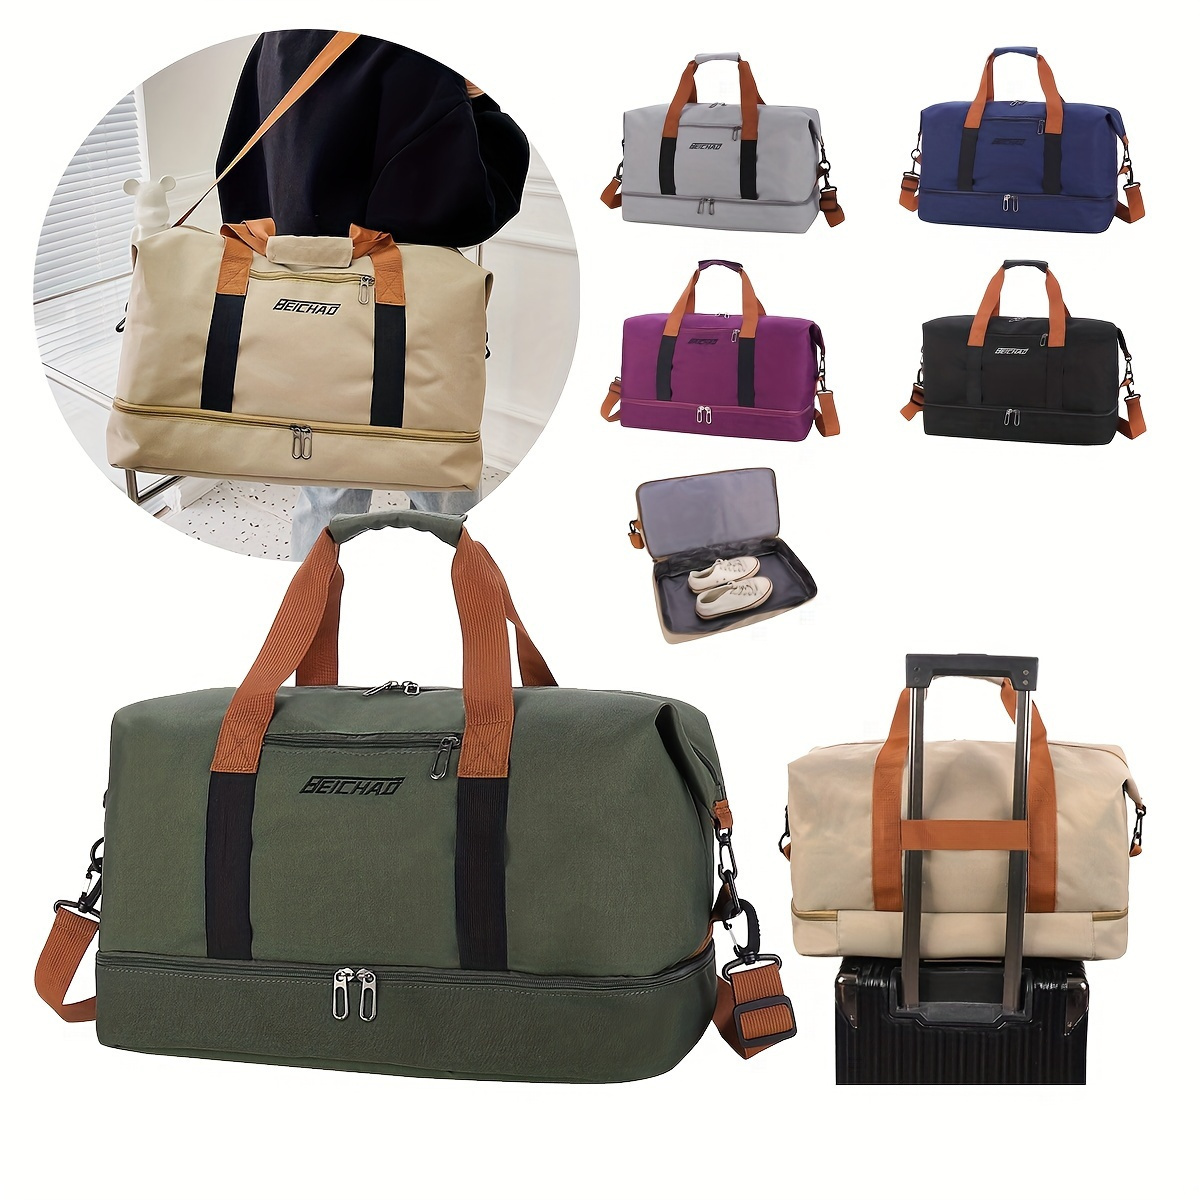 

Outdoor Sport Handbag, Travel Shoulder Crossbody Bag, Gym Bag, Portable Weekender Overnight Bag